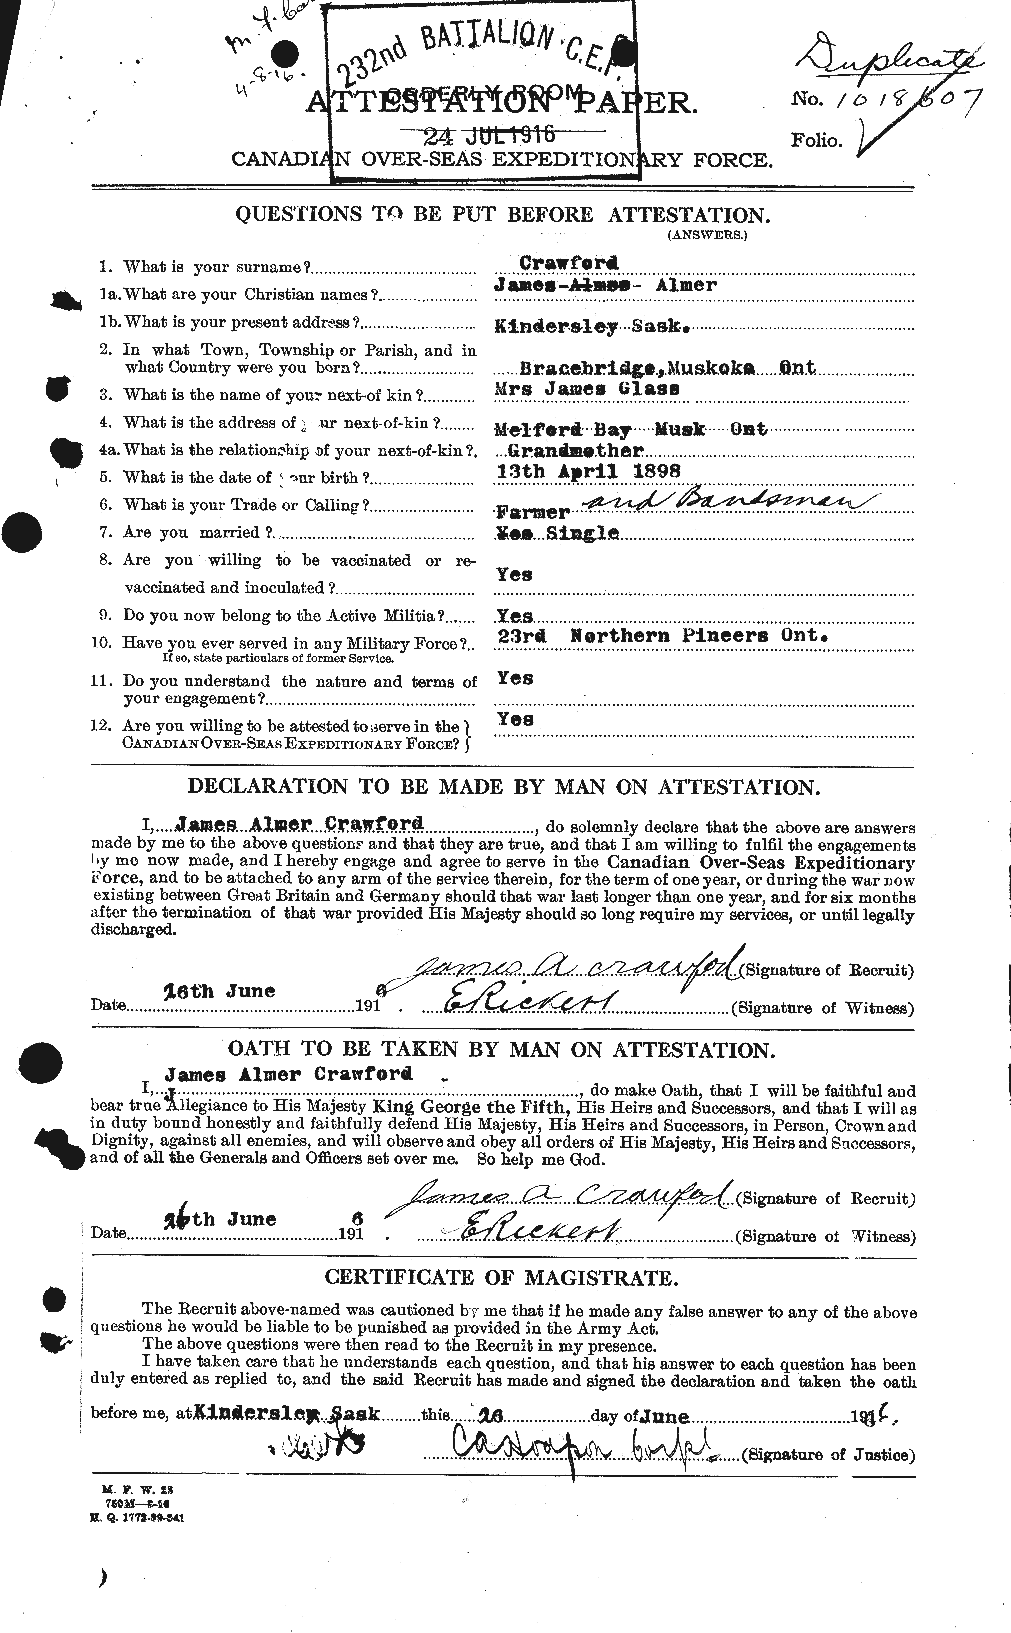 Dossiers du Personnel de la Première Guerre mondiale - CEC 062761a